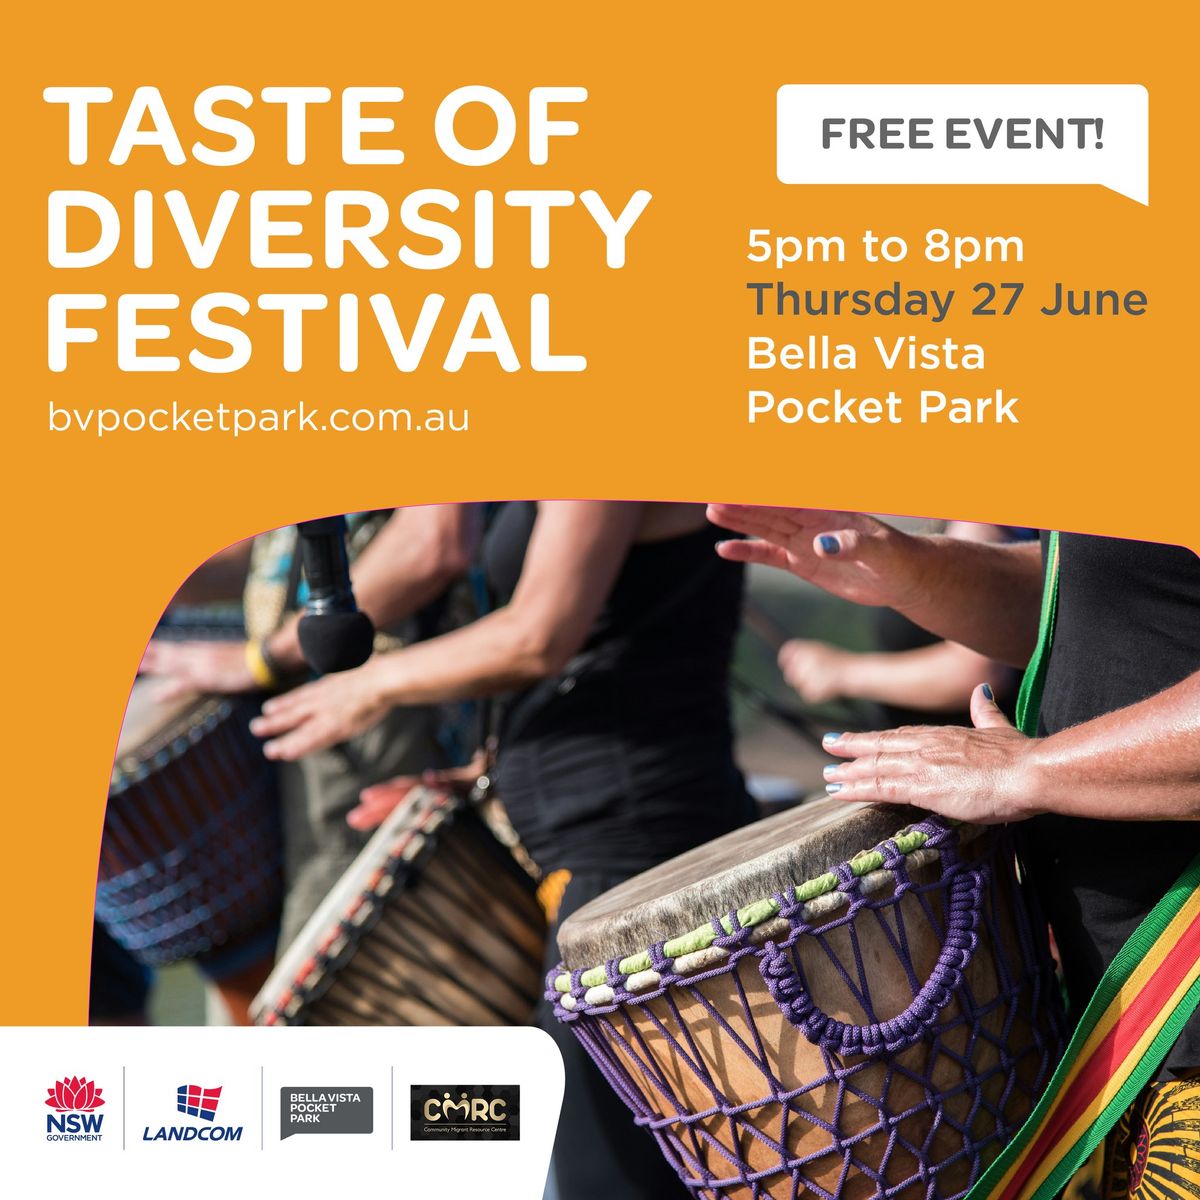 Taste of Diversity Festival at Bella Vista Pocket Park